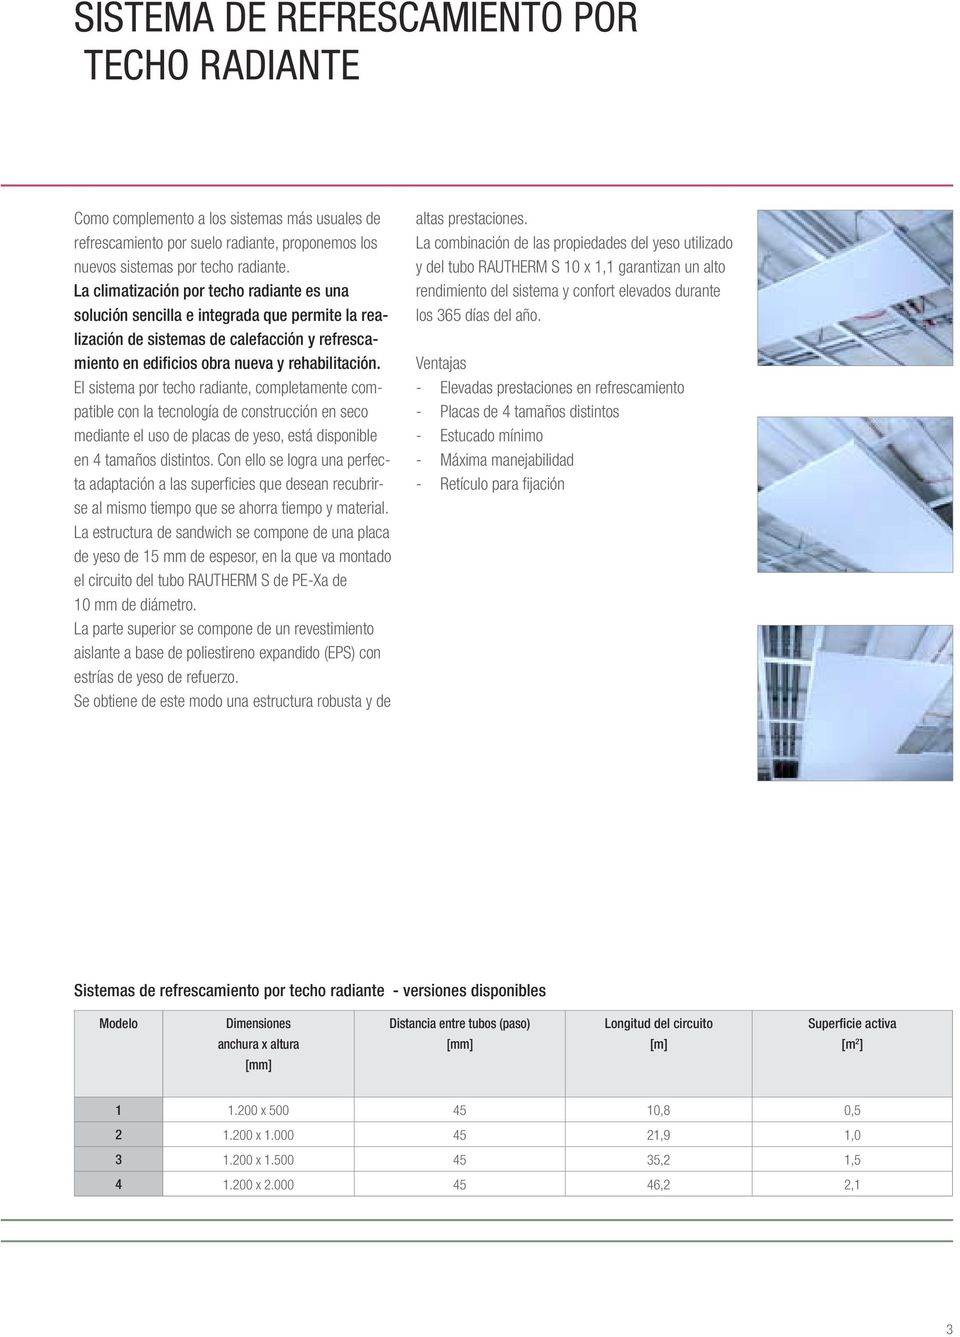 El sistema por techo radiante, completamente compatible con la tecnología de construcción en seco mediante el uso de placas de yeso, está disponible en 4 tamaños distintos.